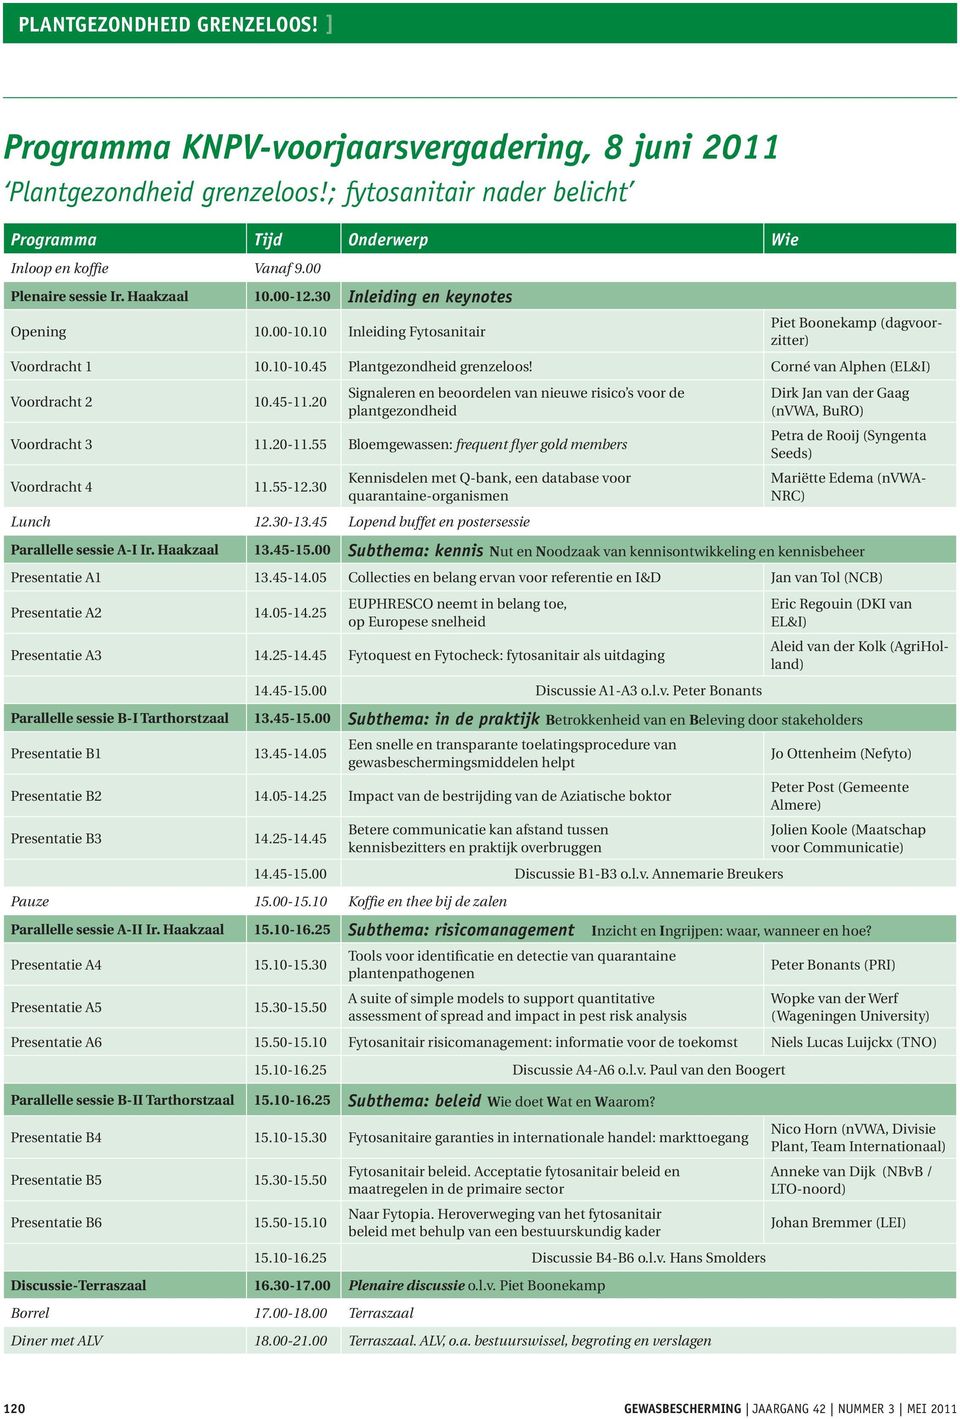 Corné van Alphen (EL&I) Voordracht 2 10.45-11.20 Signaleren en beoordelen van nieuwe risico s voor de plantgezondheid Voordracht 3 11.20-11.